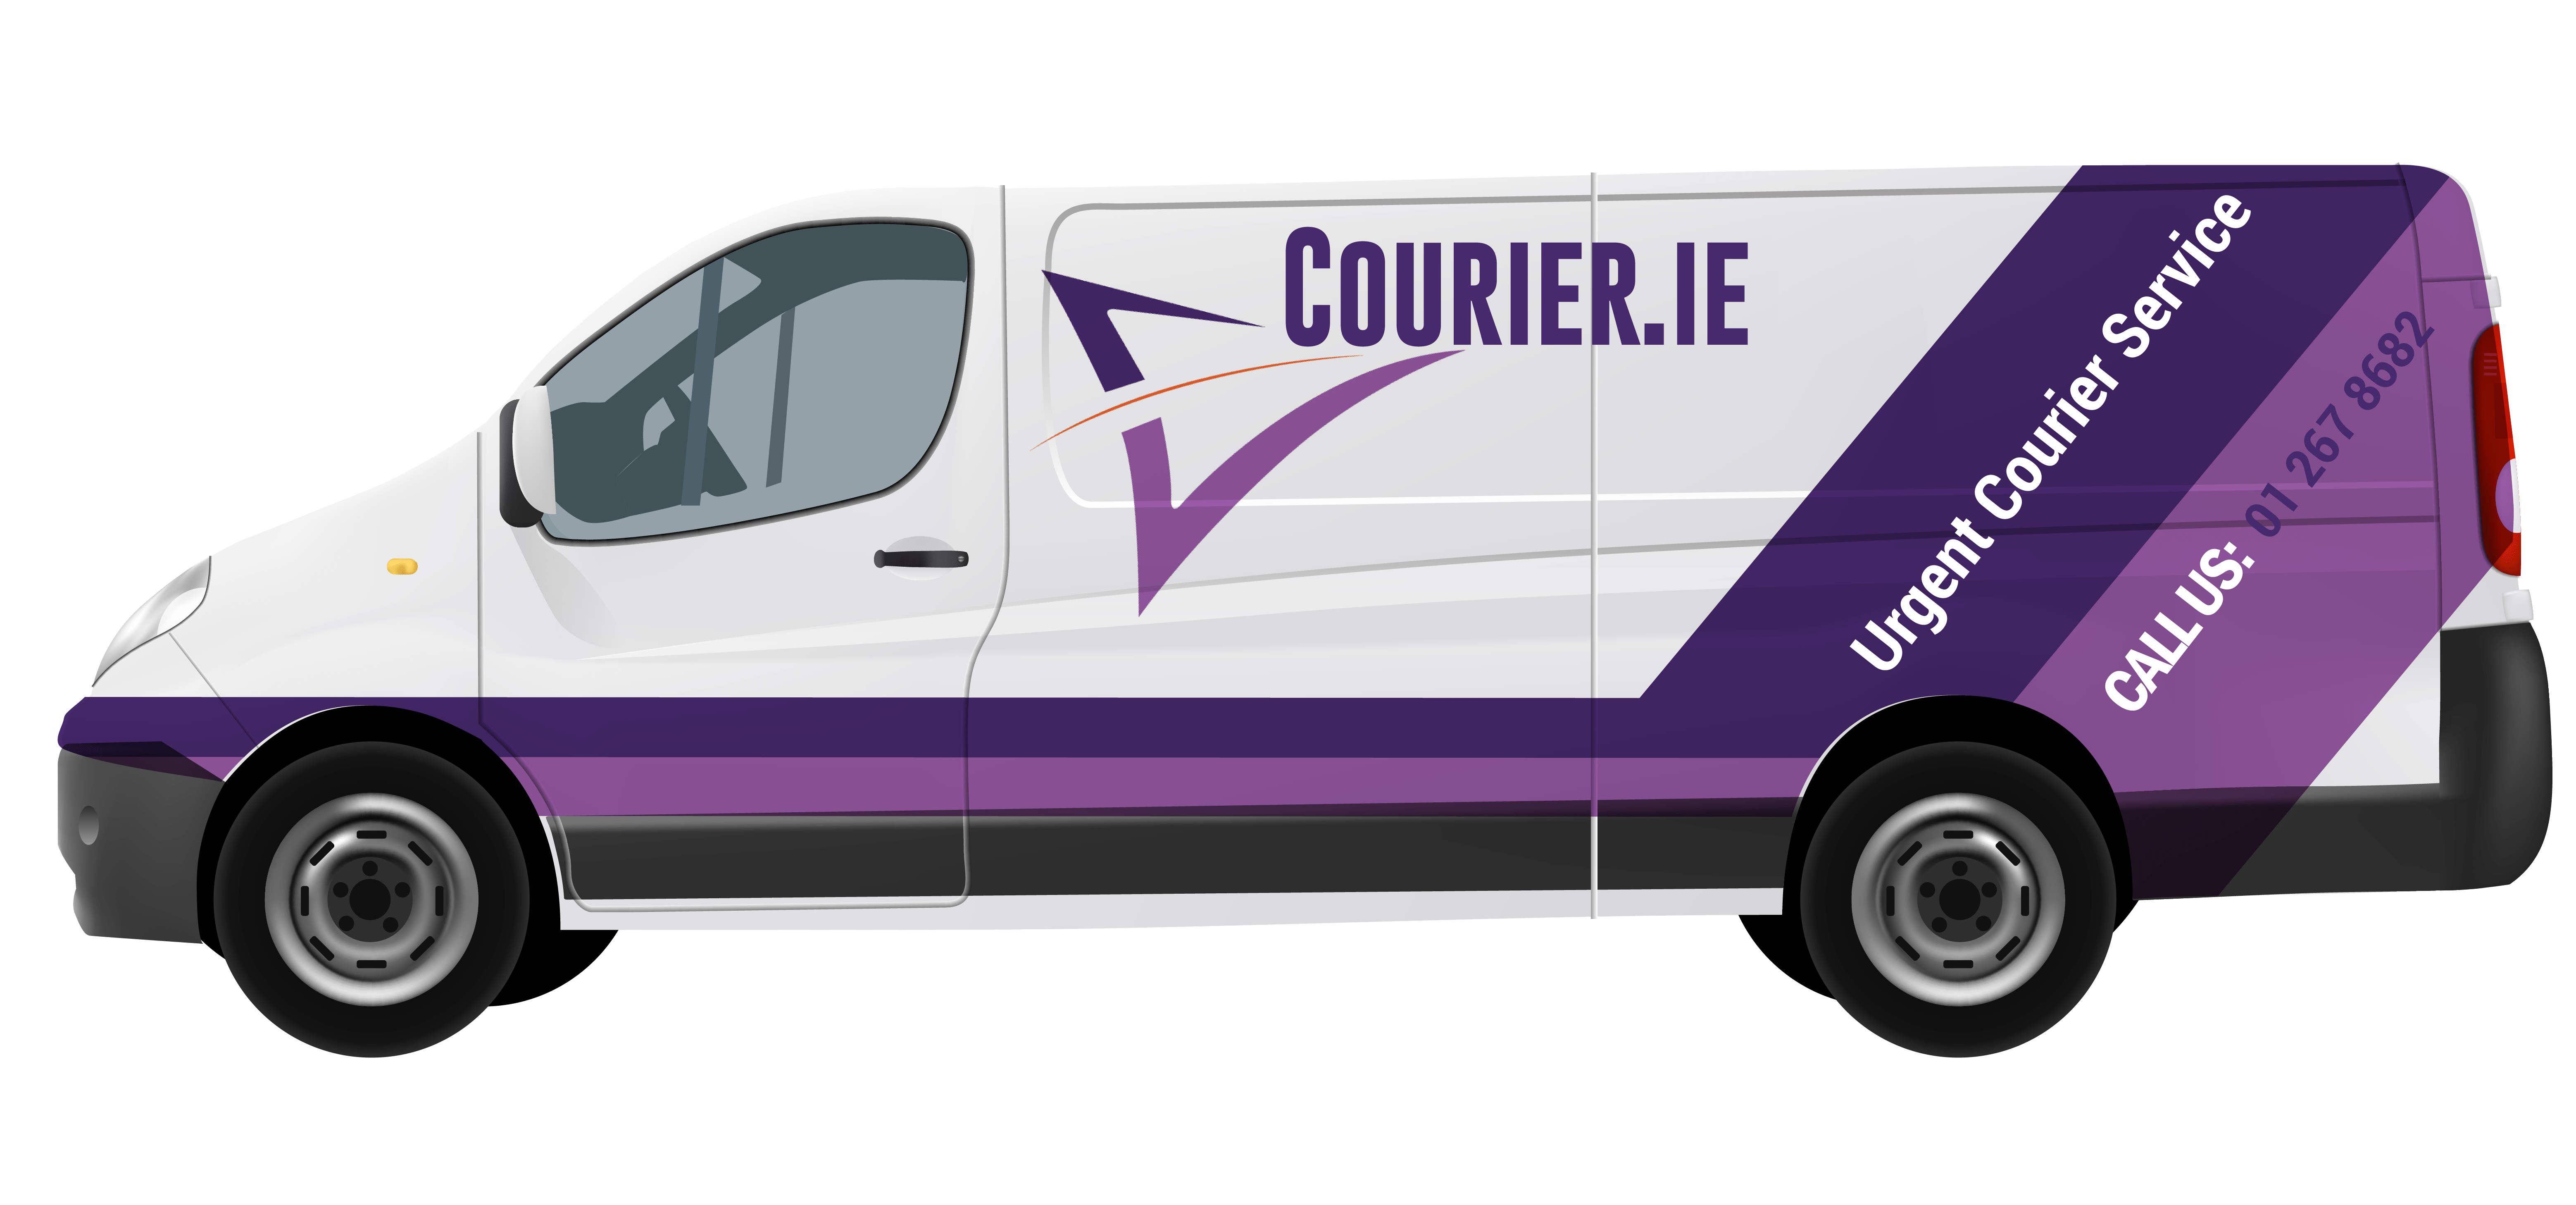 Courier Service - Van Parcel Delivery Left